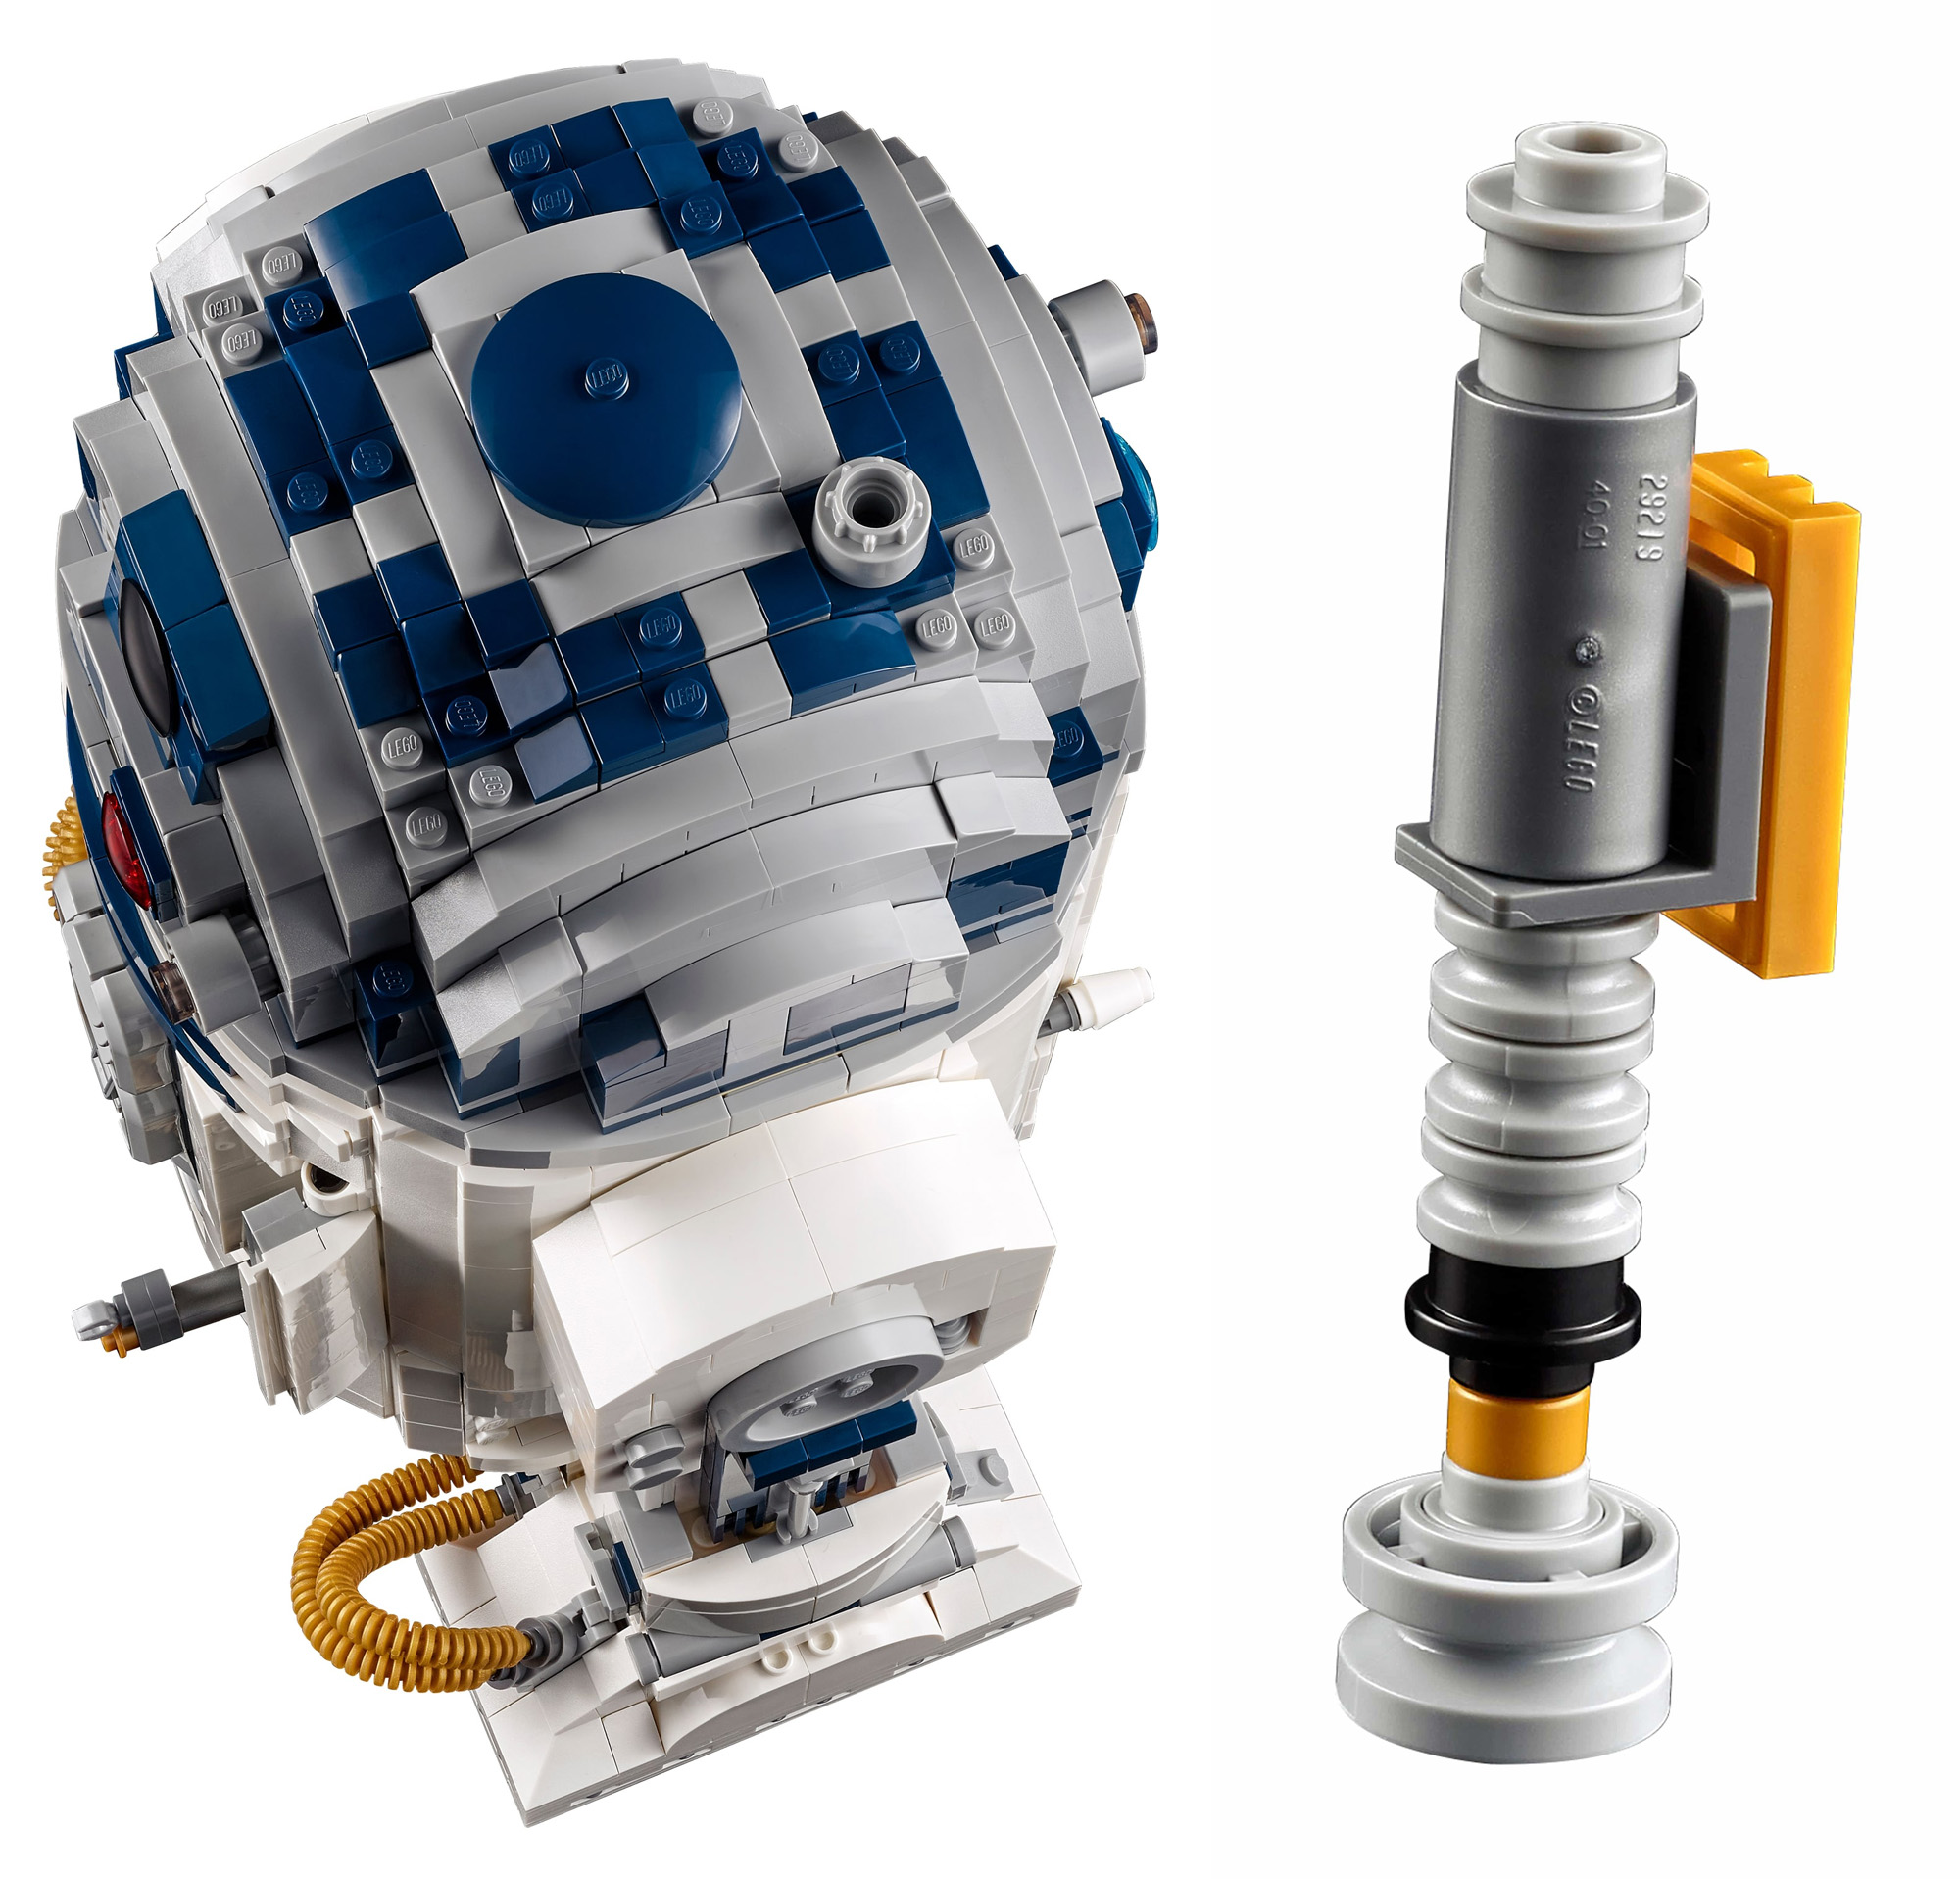 5月1日発売『75308 UCS R2-D2』大人のレゴ(R)スター・ウォーズ新製品情報(2021)